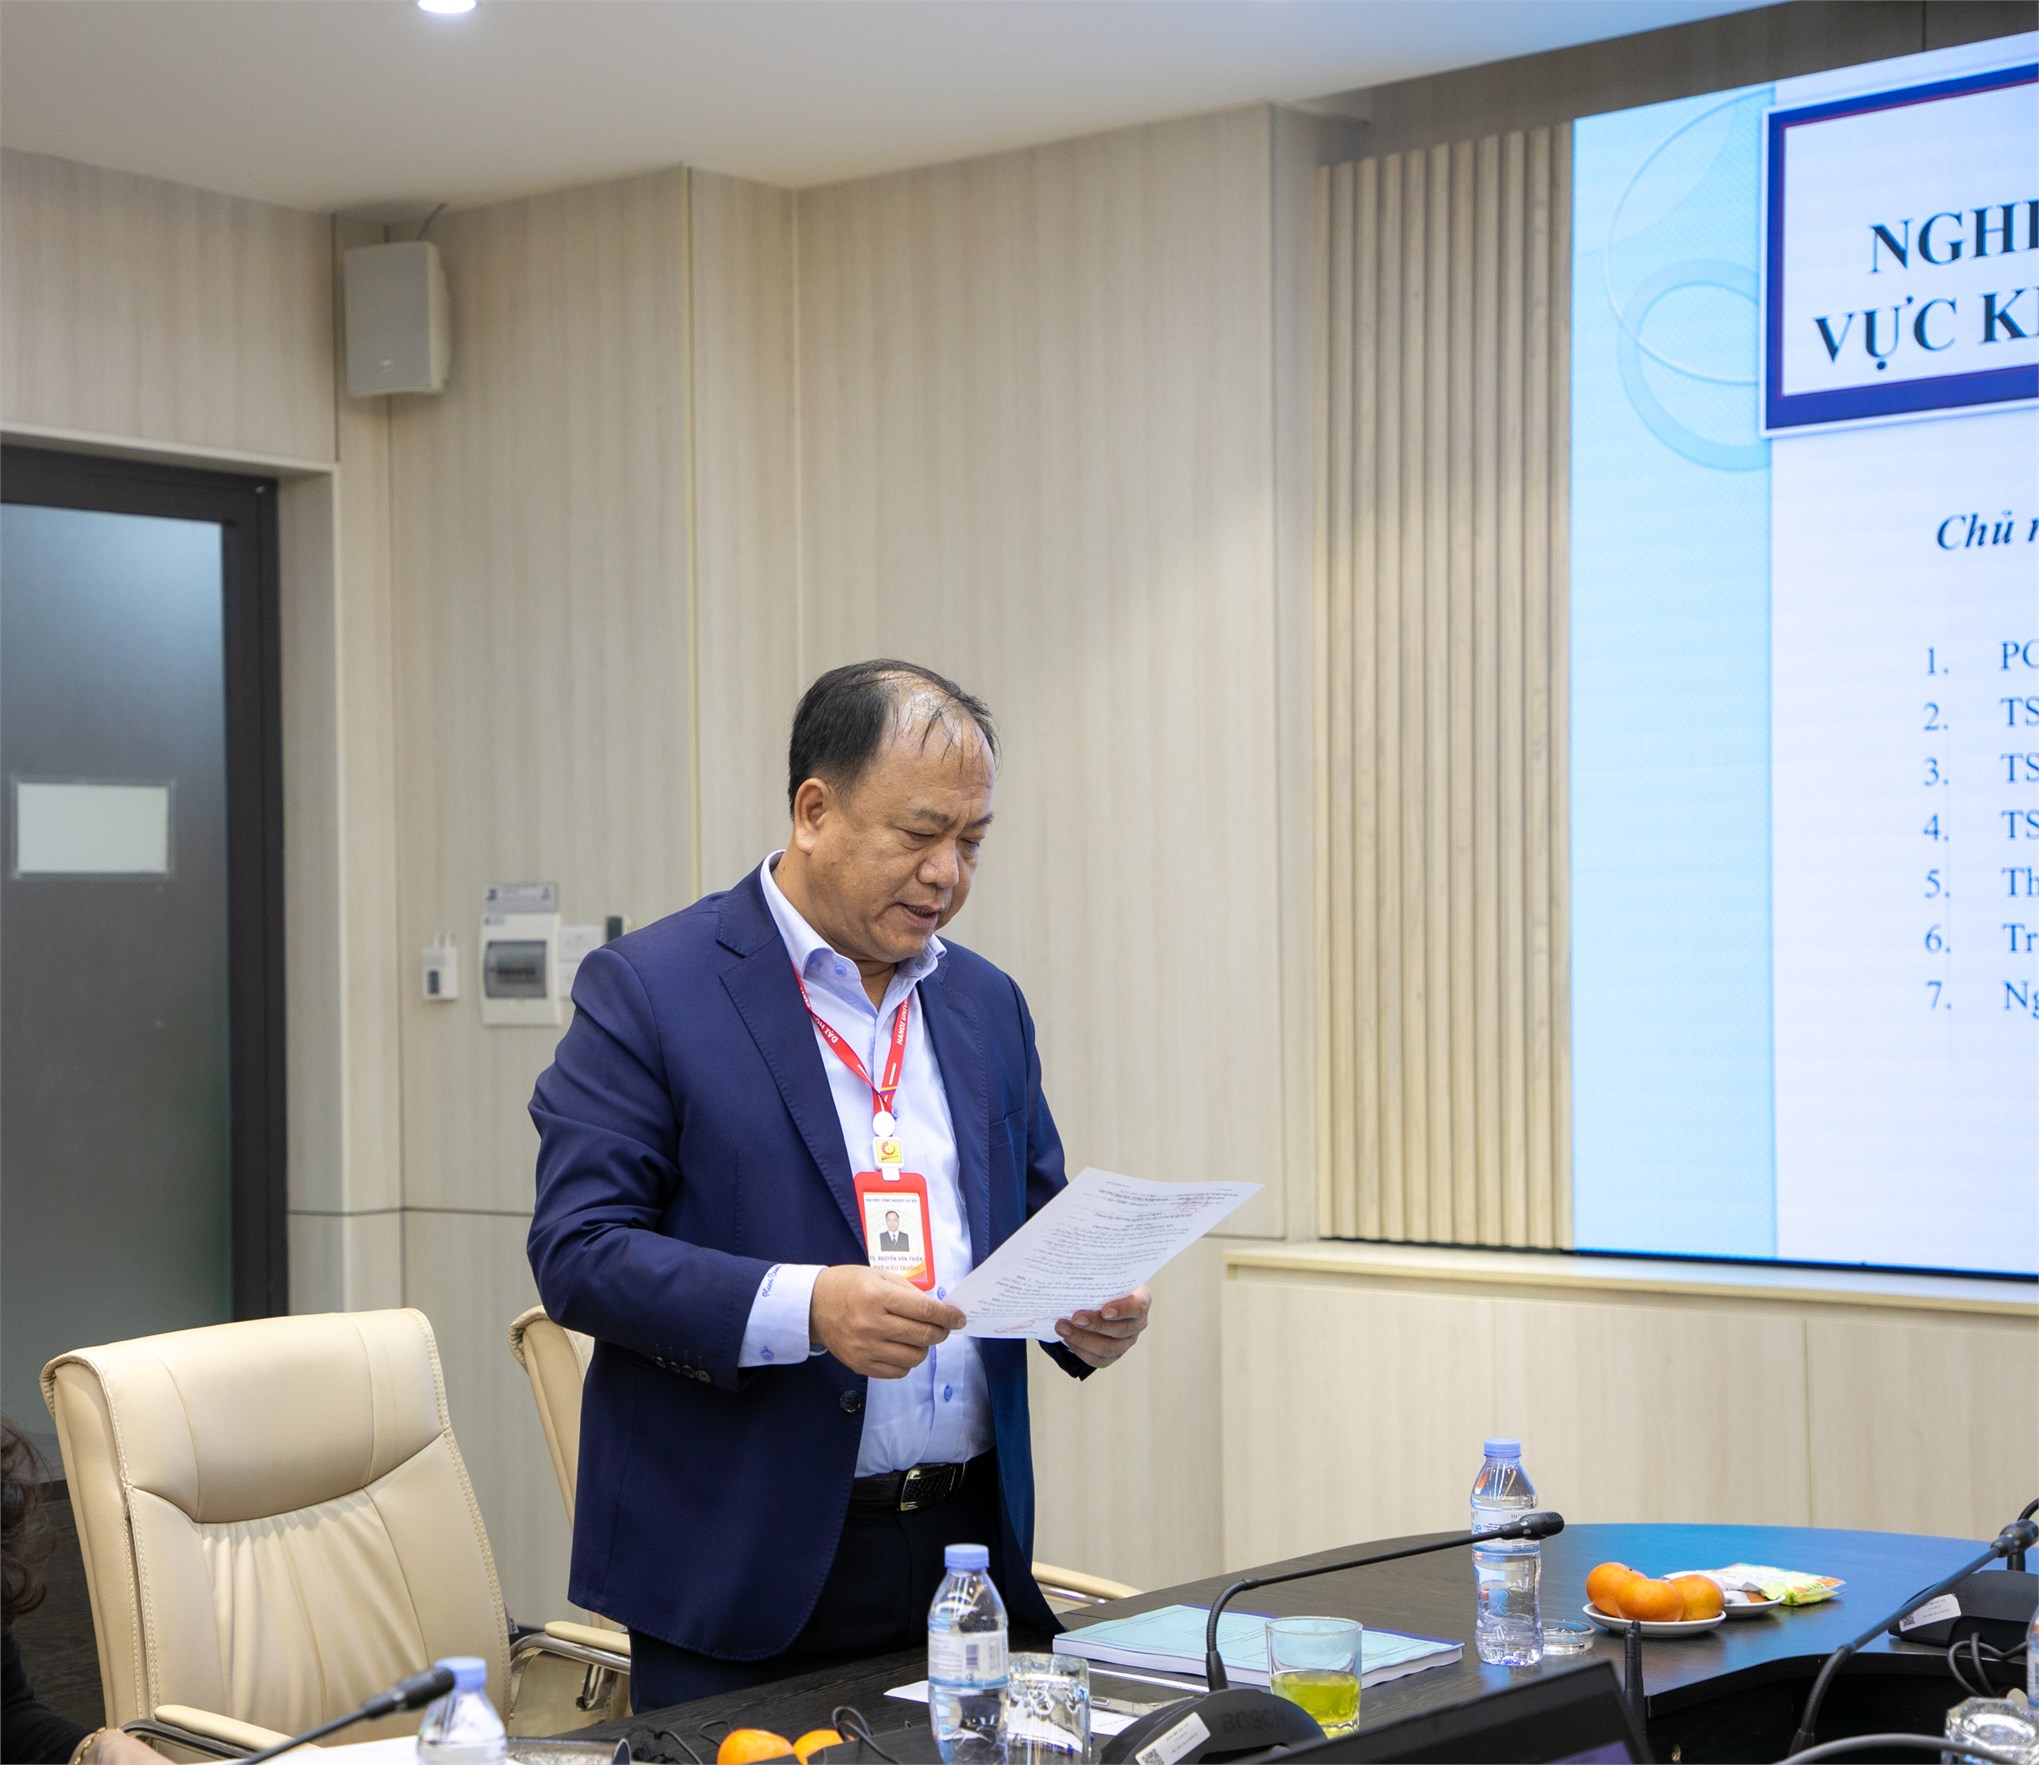 Đề tài “Nghiên cứu về chuyển đổi số trong lĩnh vực kế toán tại các doanh nghiệp Việt Nam” do TS. Nguyễn Thị Hồng Duyên làm chủ nhiệm đã được nghiệm thu cấp trường.